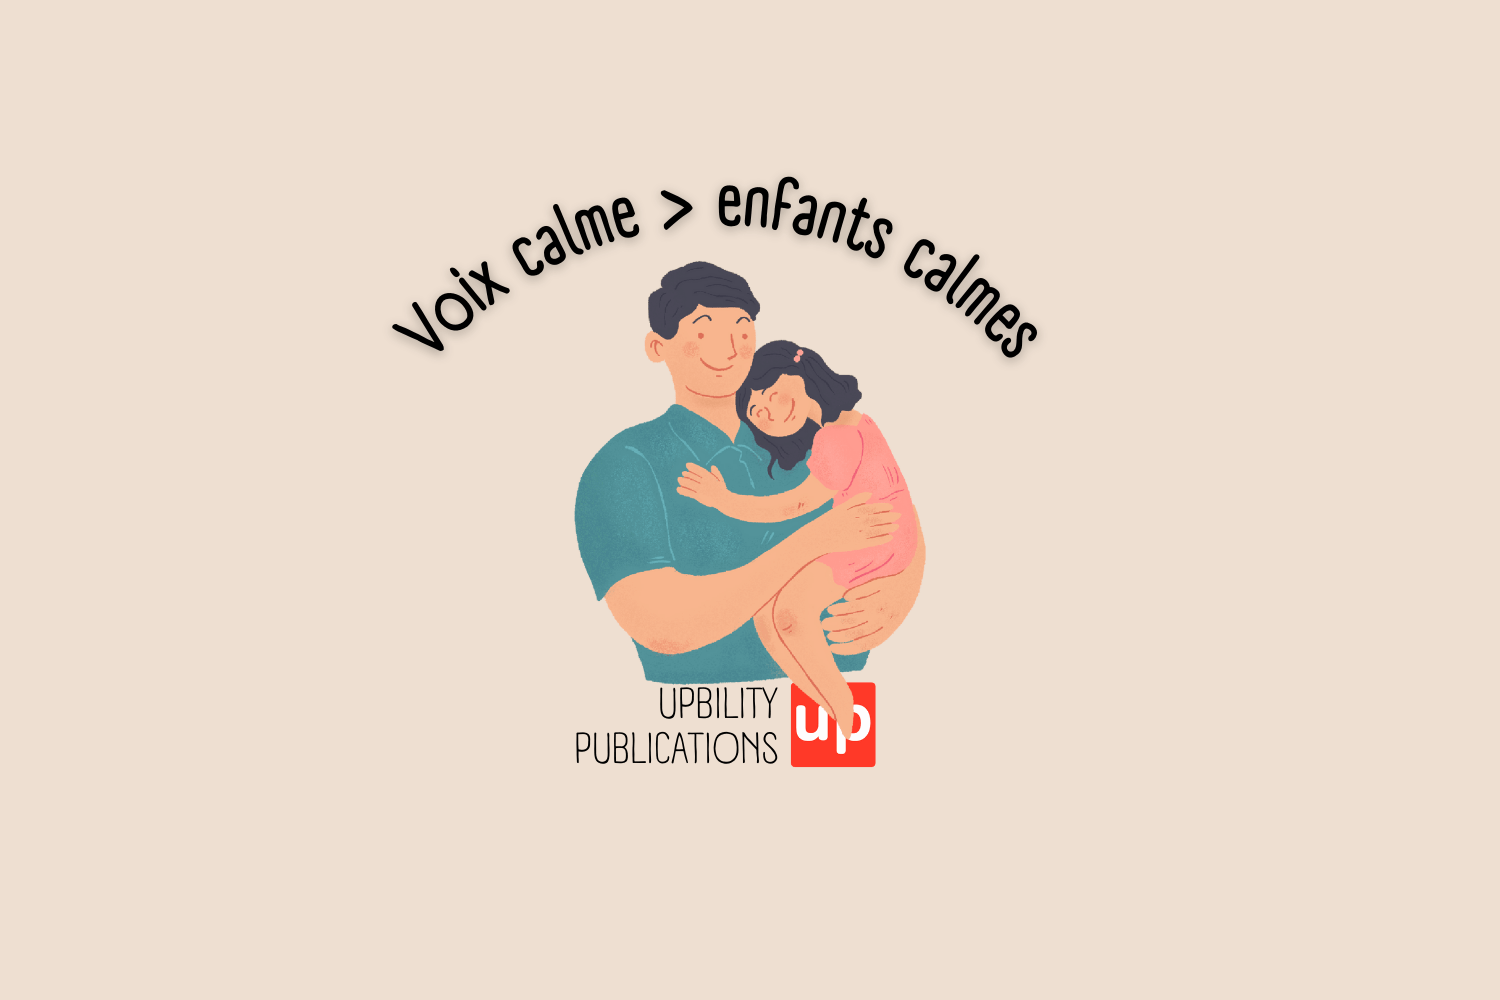 Utiliser un voix calme pour calmer les enfants - Upbility.fr